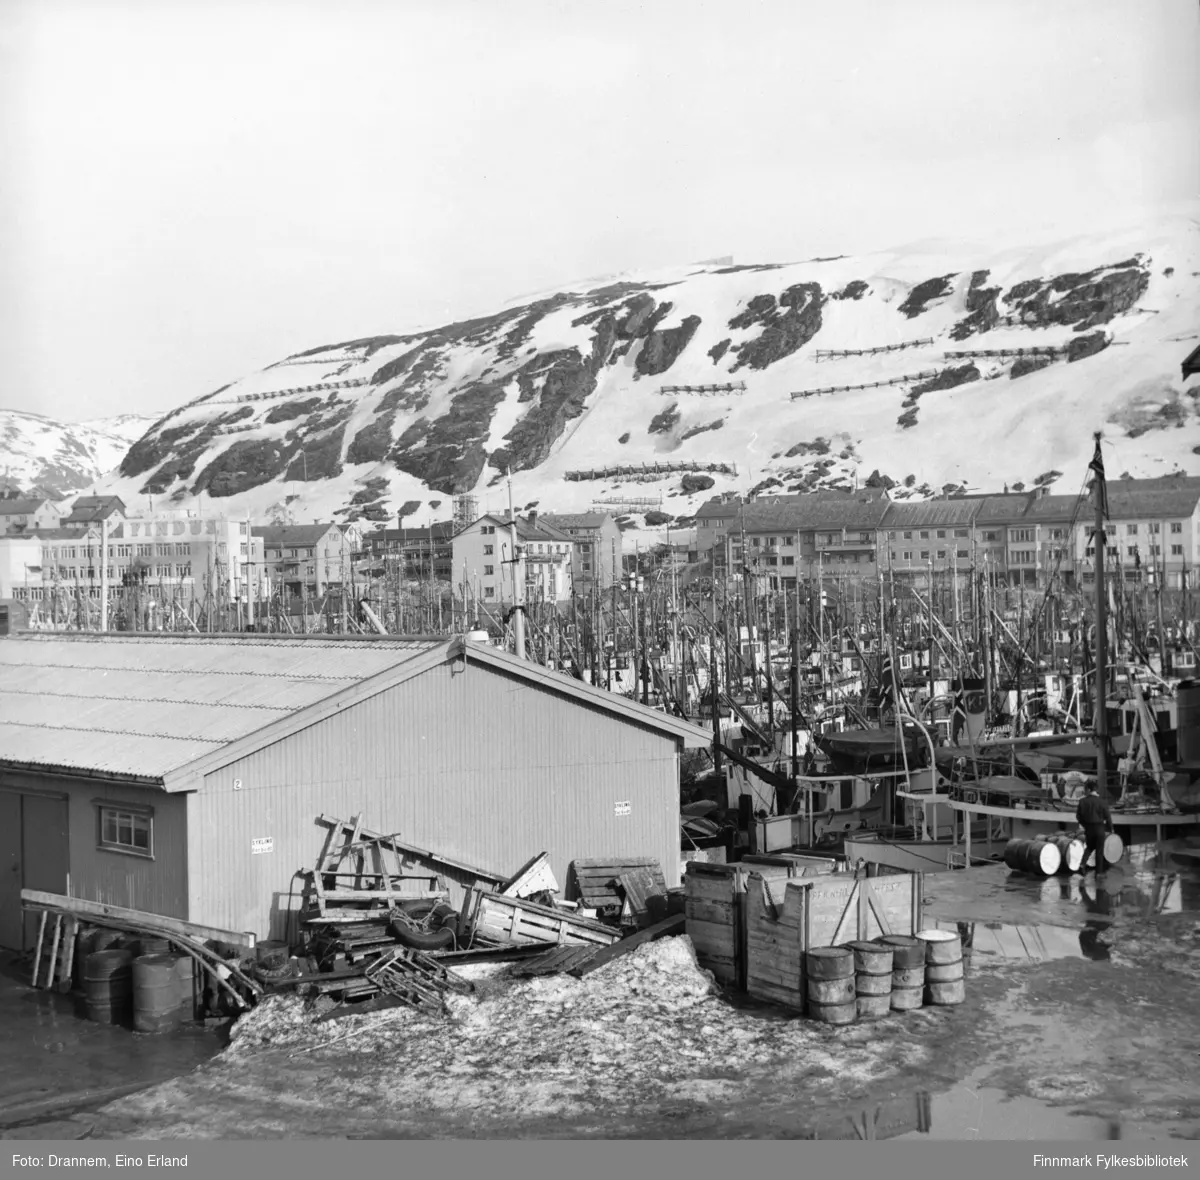 Masse fiskebåter ved havnet i Hammerfest. Findus-bygningen i venstre side av bildet. Dagen er sannsynligvis 17. mai